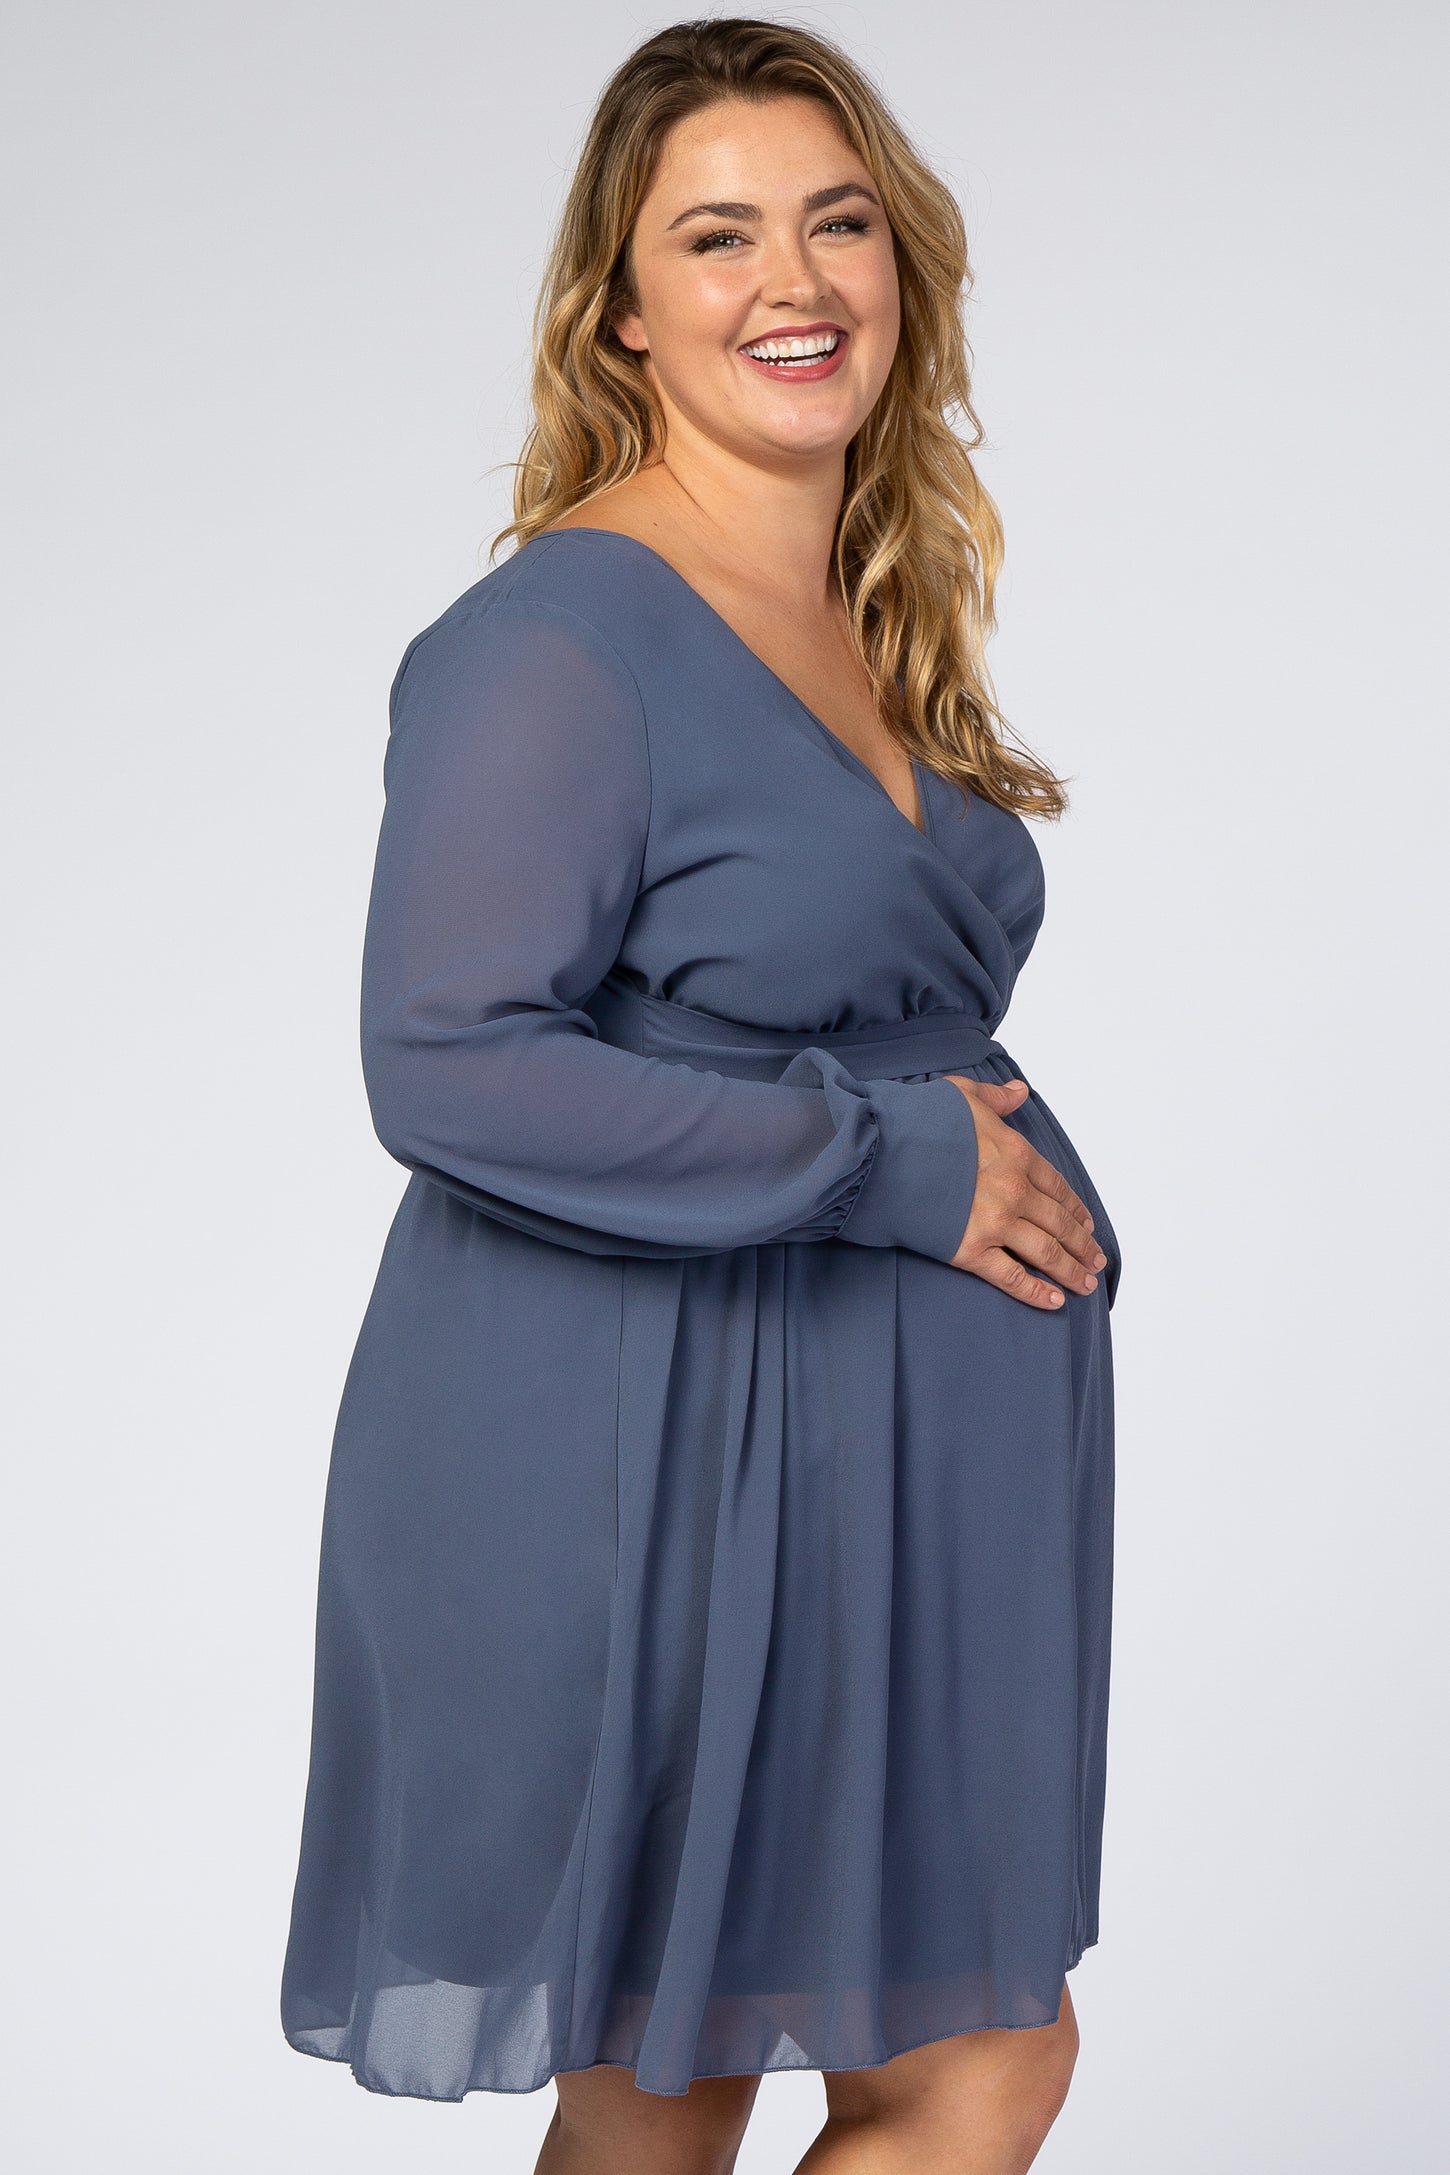 Dusty Blue Chiffon Plus Maternity Wrap Dress– PinkBlush